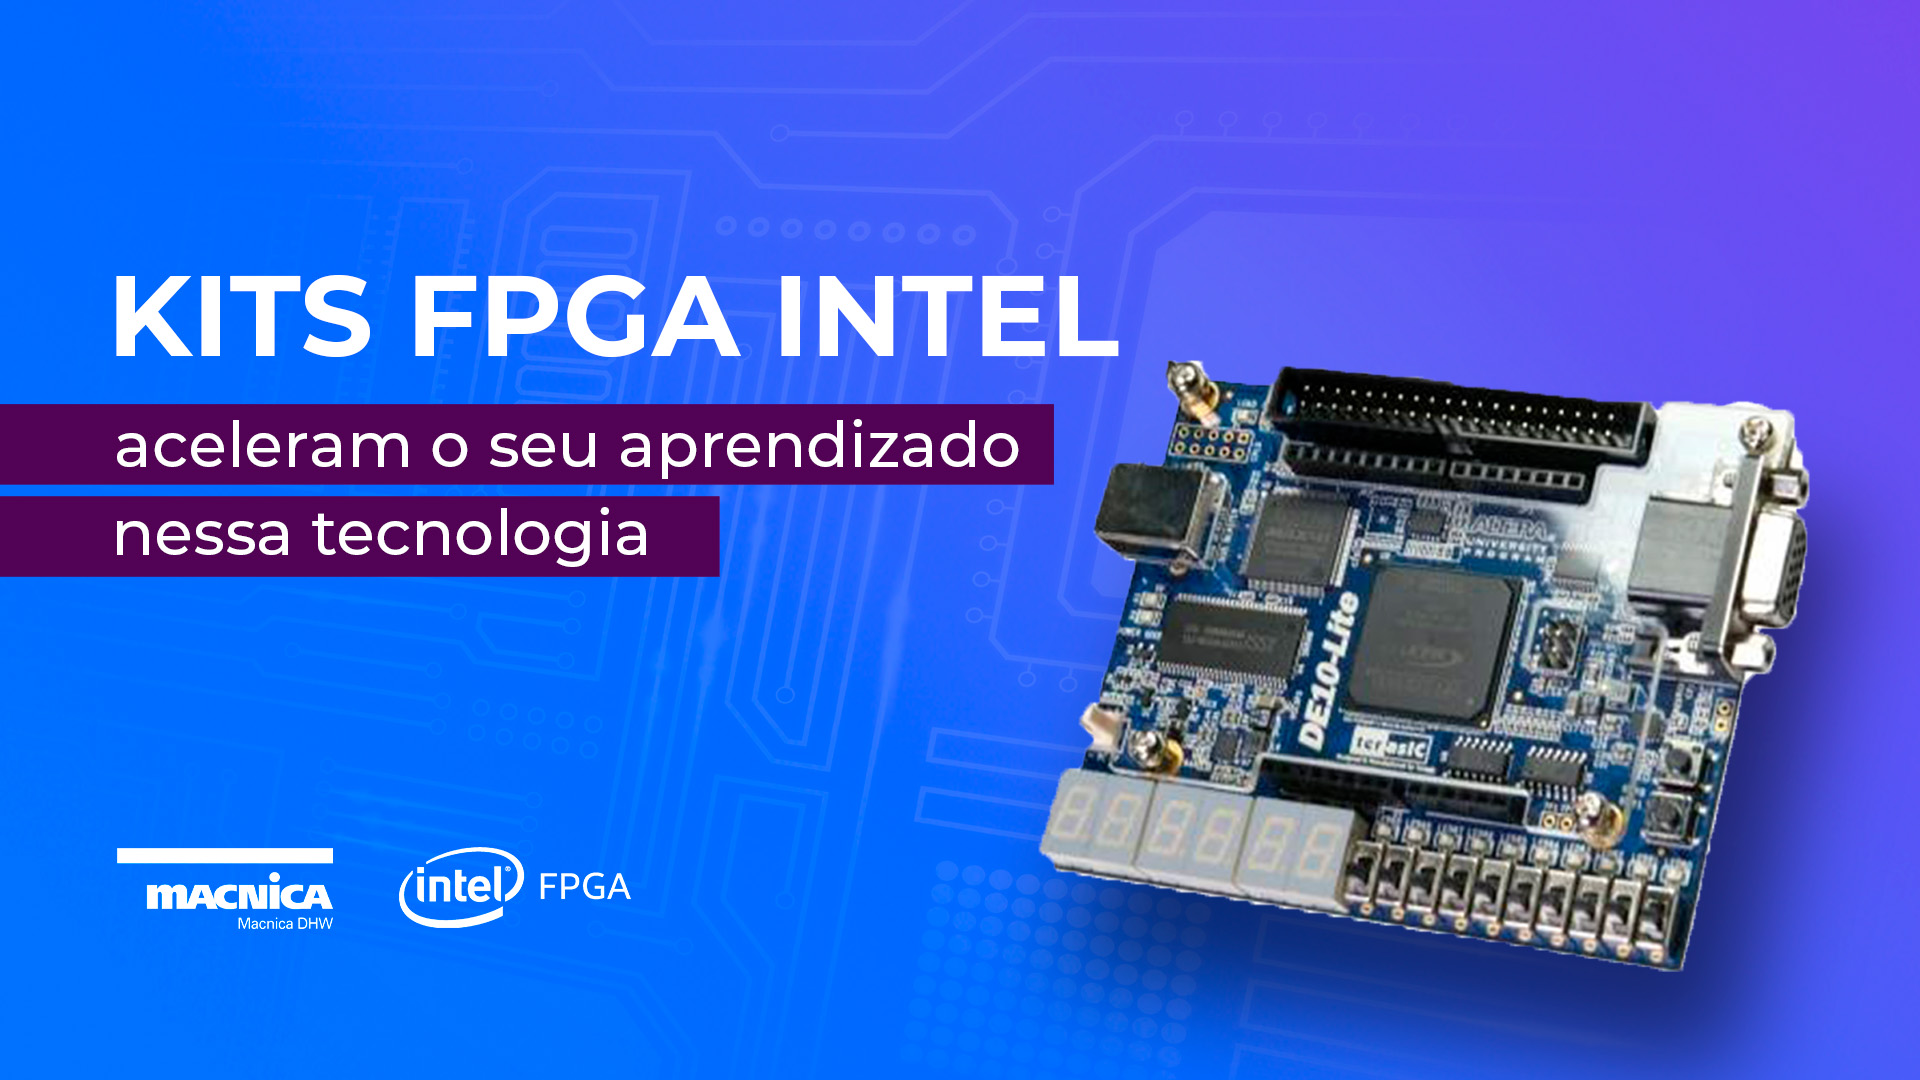 Kits FPGA Intel aceleram o seu aprendizado nessa tecnologia